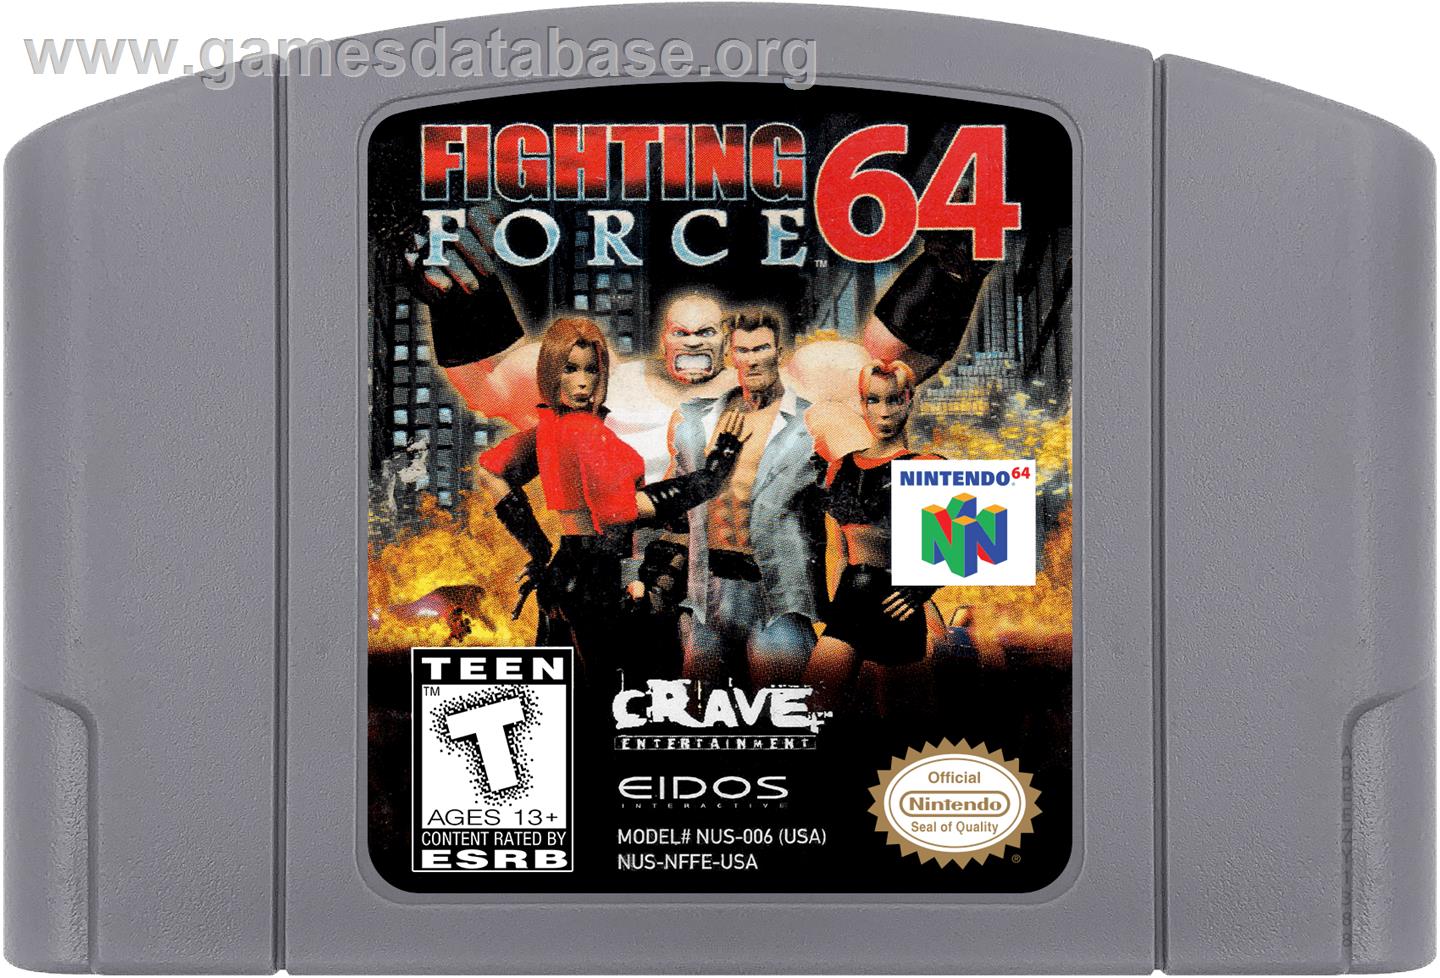 Fighting Force 64 - Nintendo N64 - Artwork - Cartridge